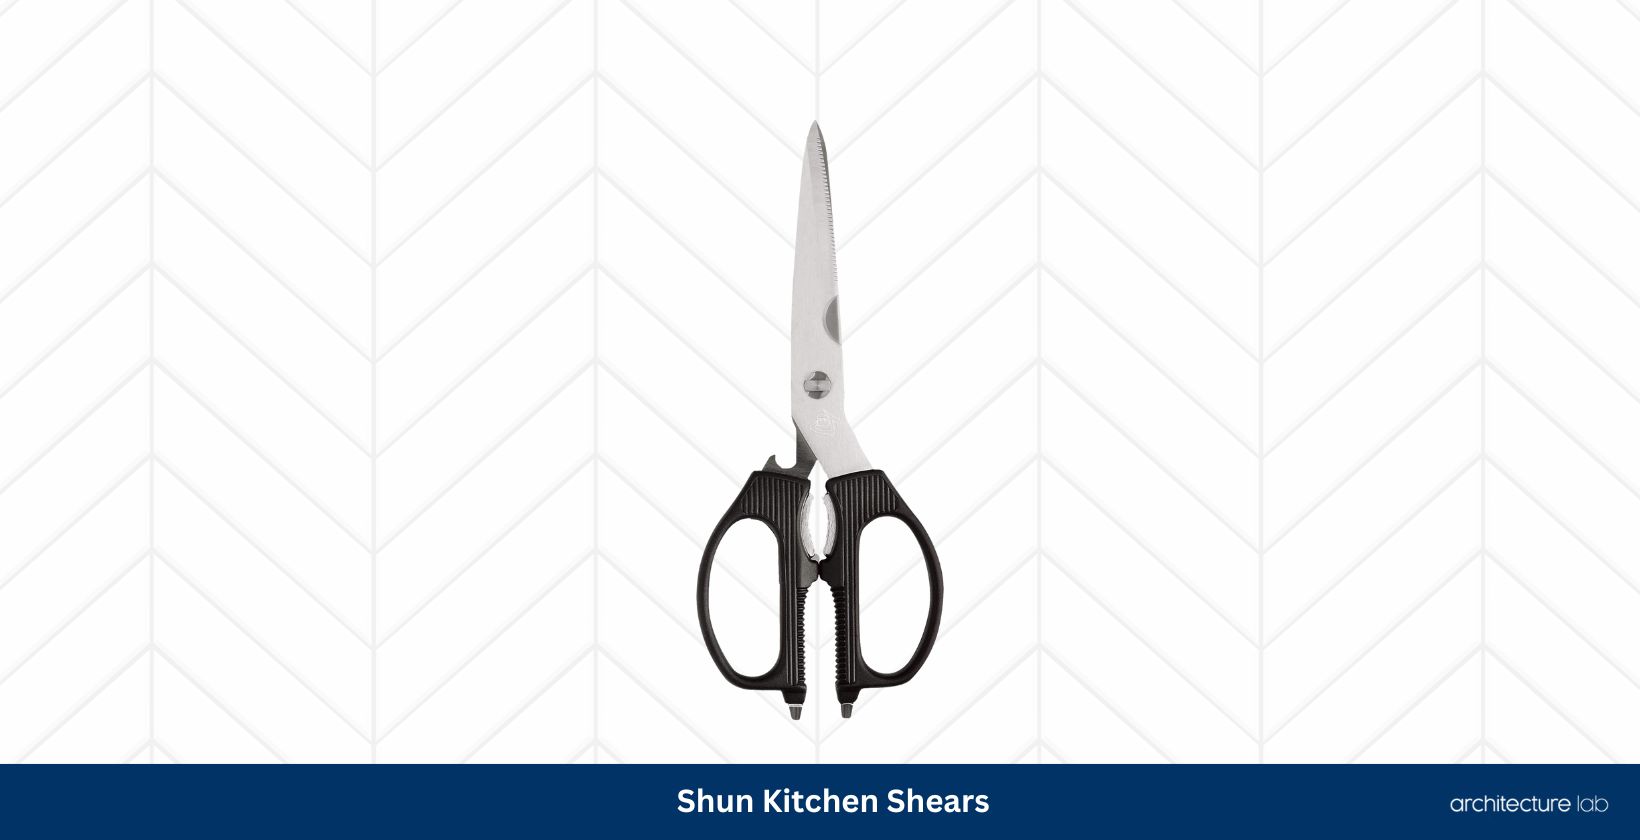 Shun kitchen shears0